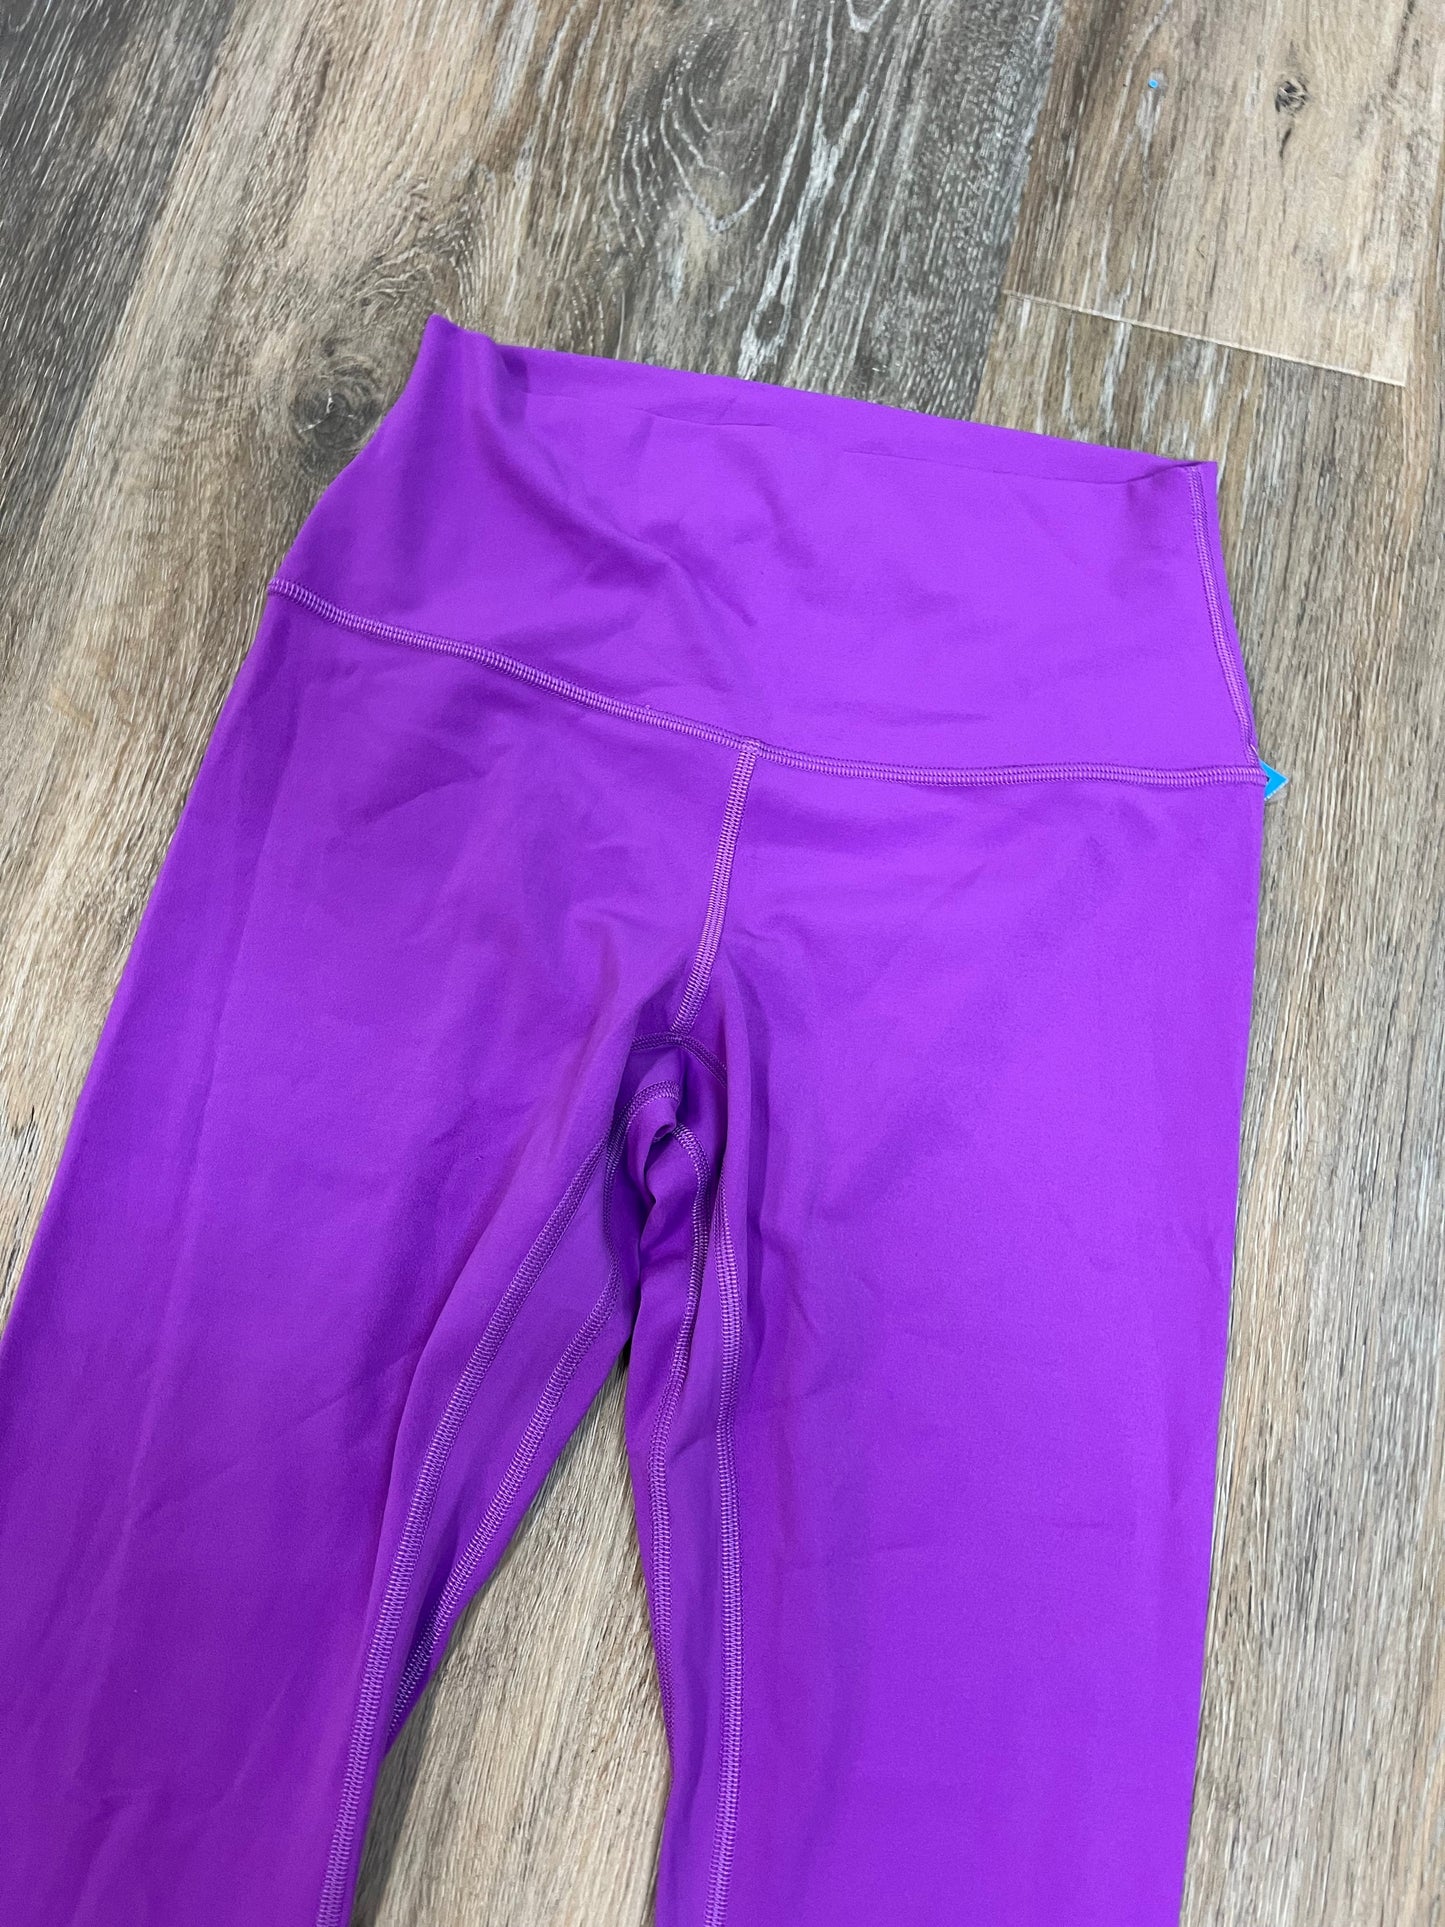 Purple Athletic Leggings Lululemon, Size 6